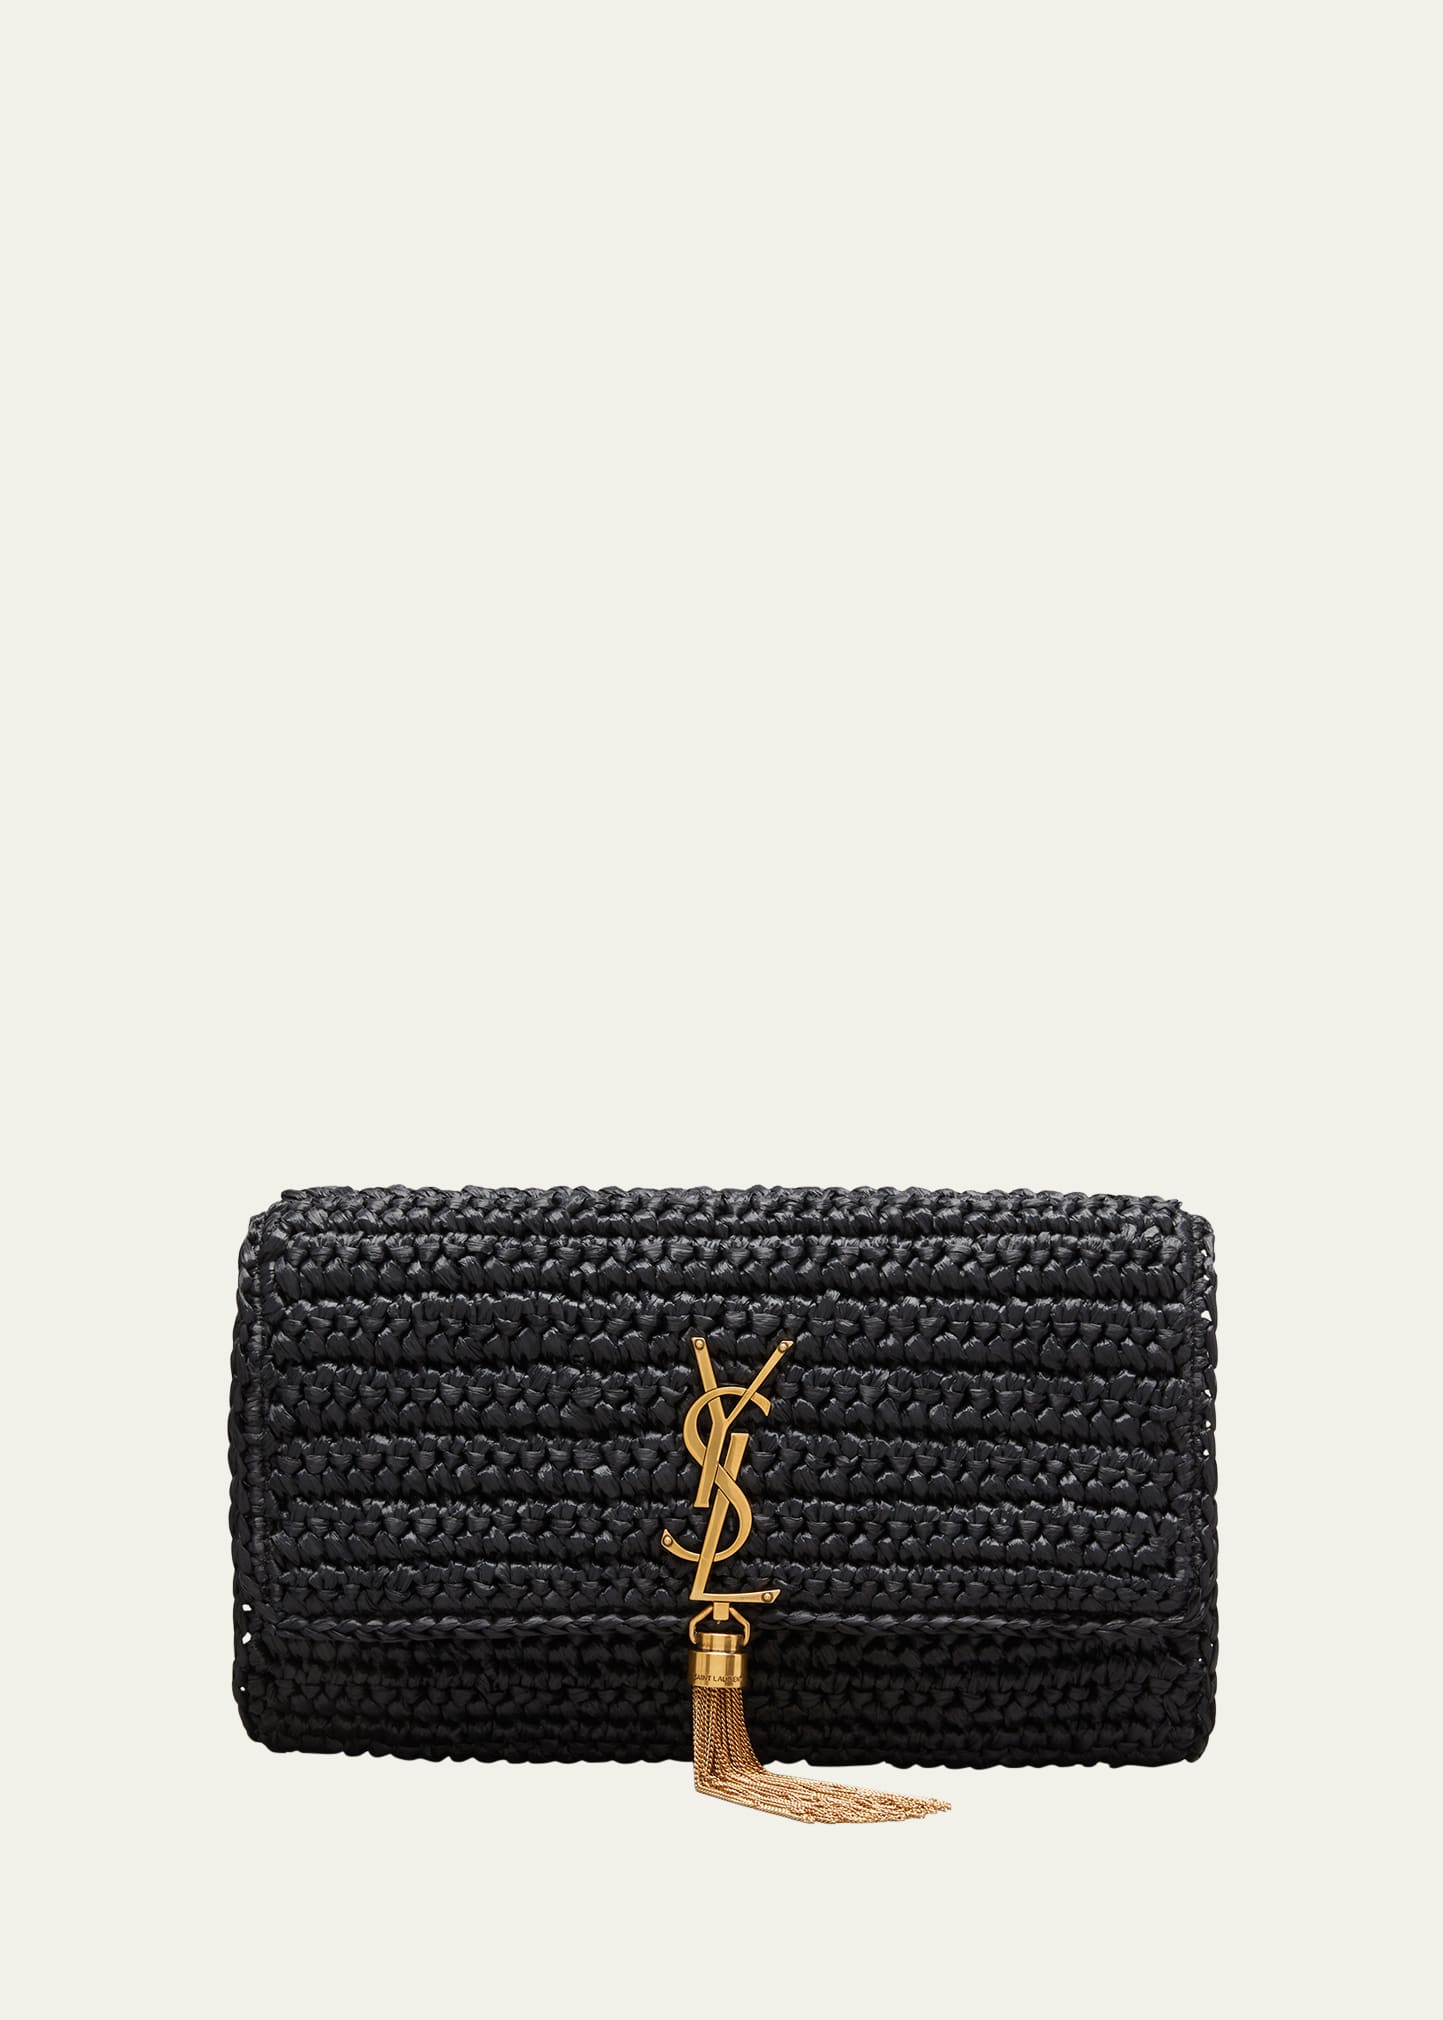 Stunning! YSL Yves Saint Laurent Medium Lou Puffer Bag, Saffran